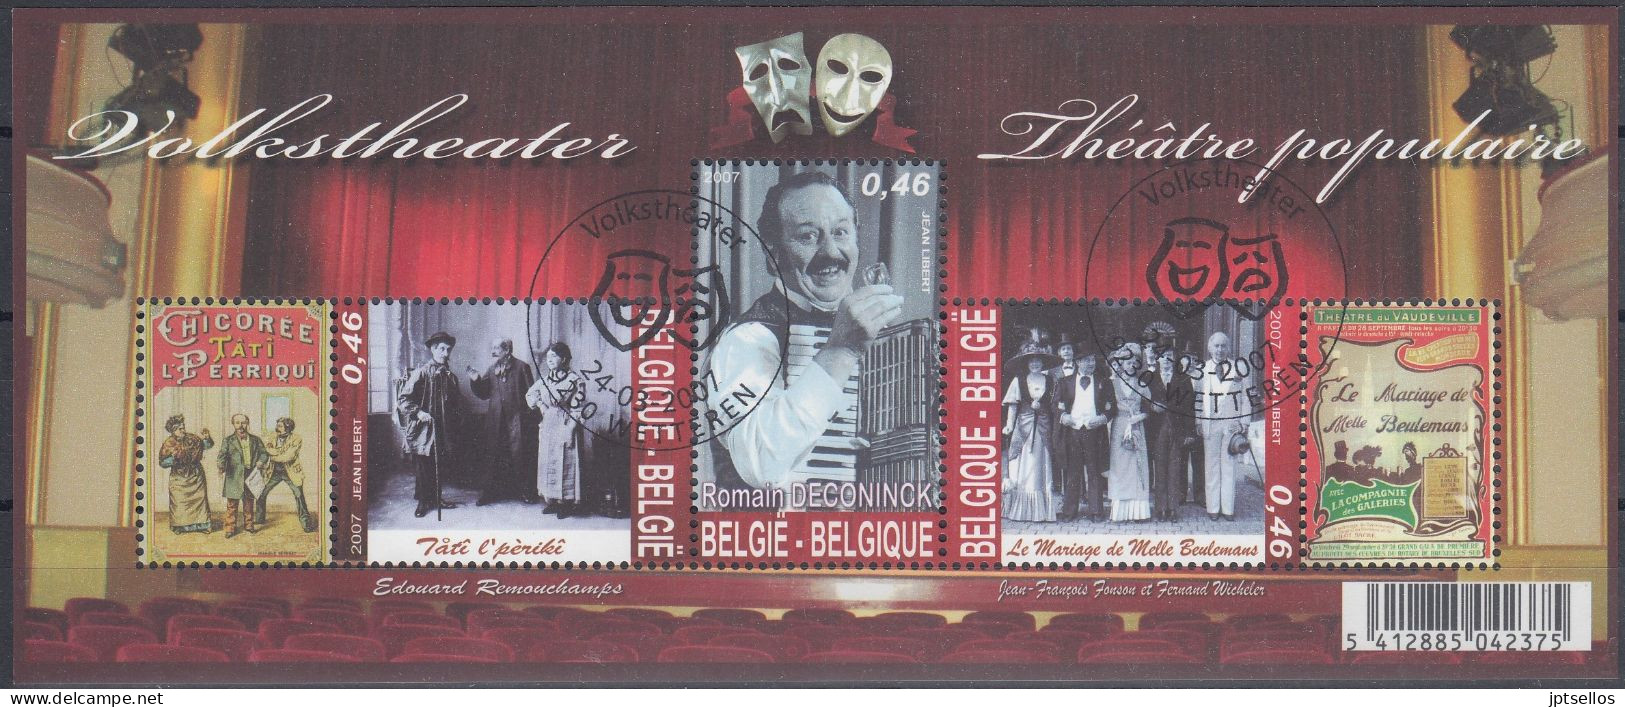 BELGIQUE 2007 Nº HB-118 USADO 1º DIA - Used Stamps